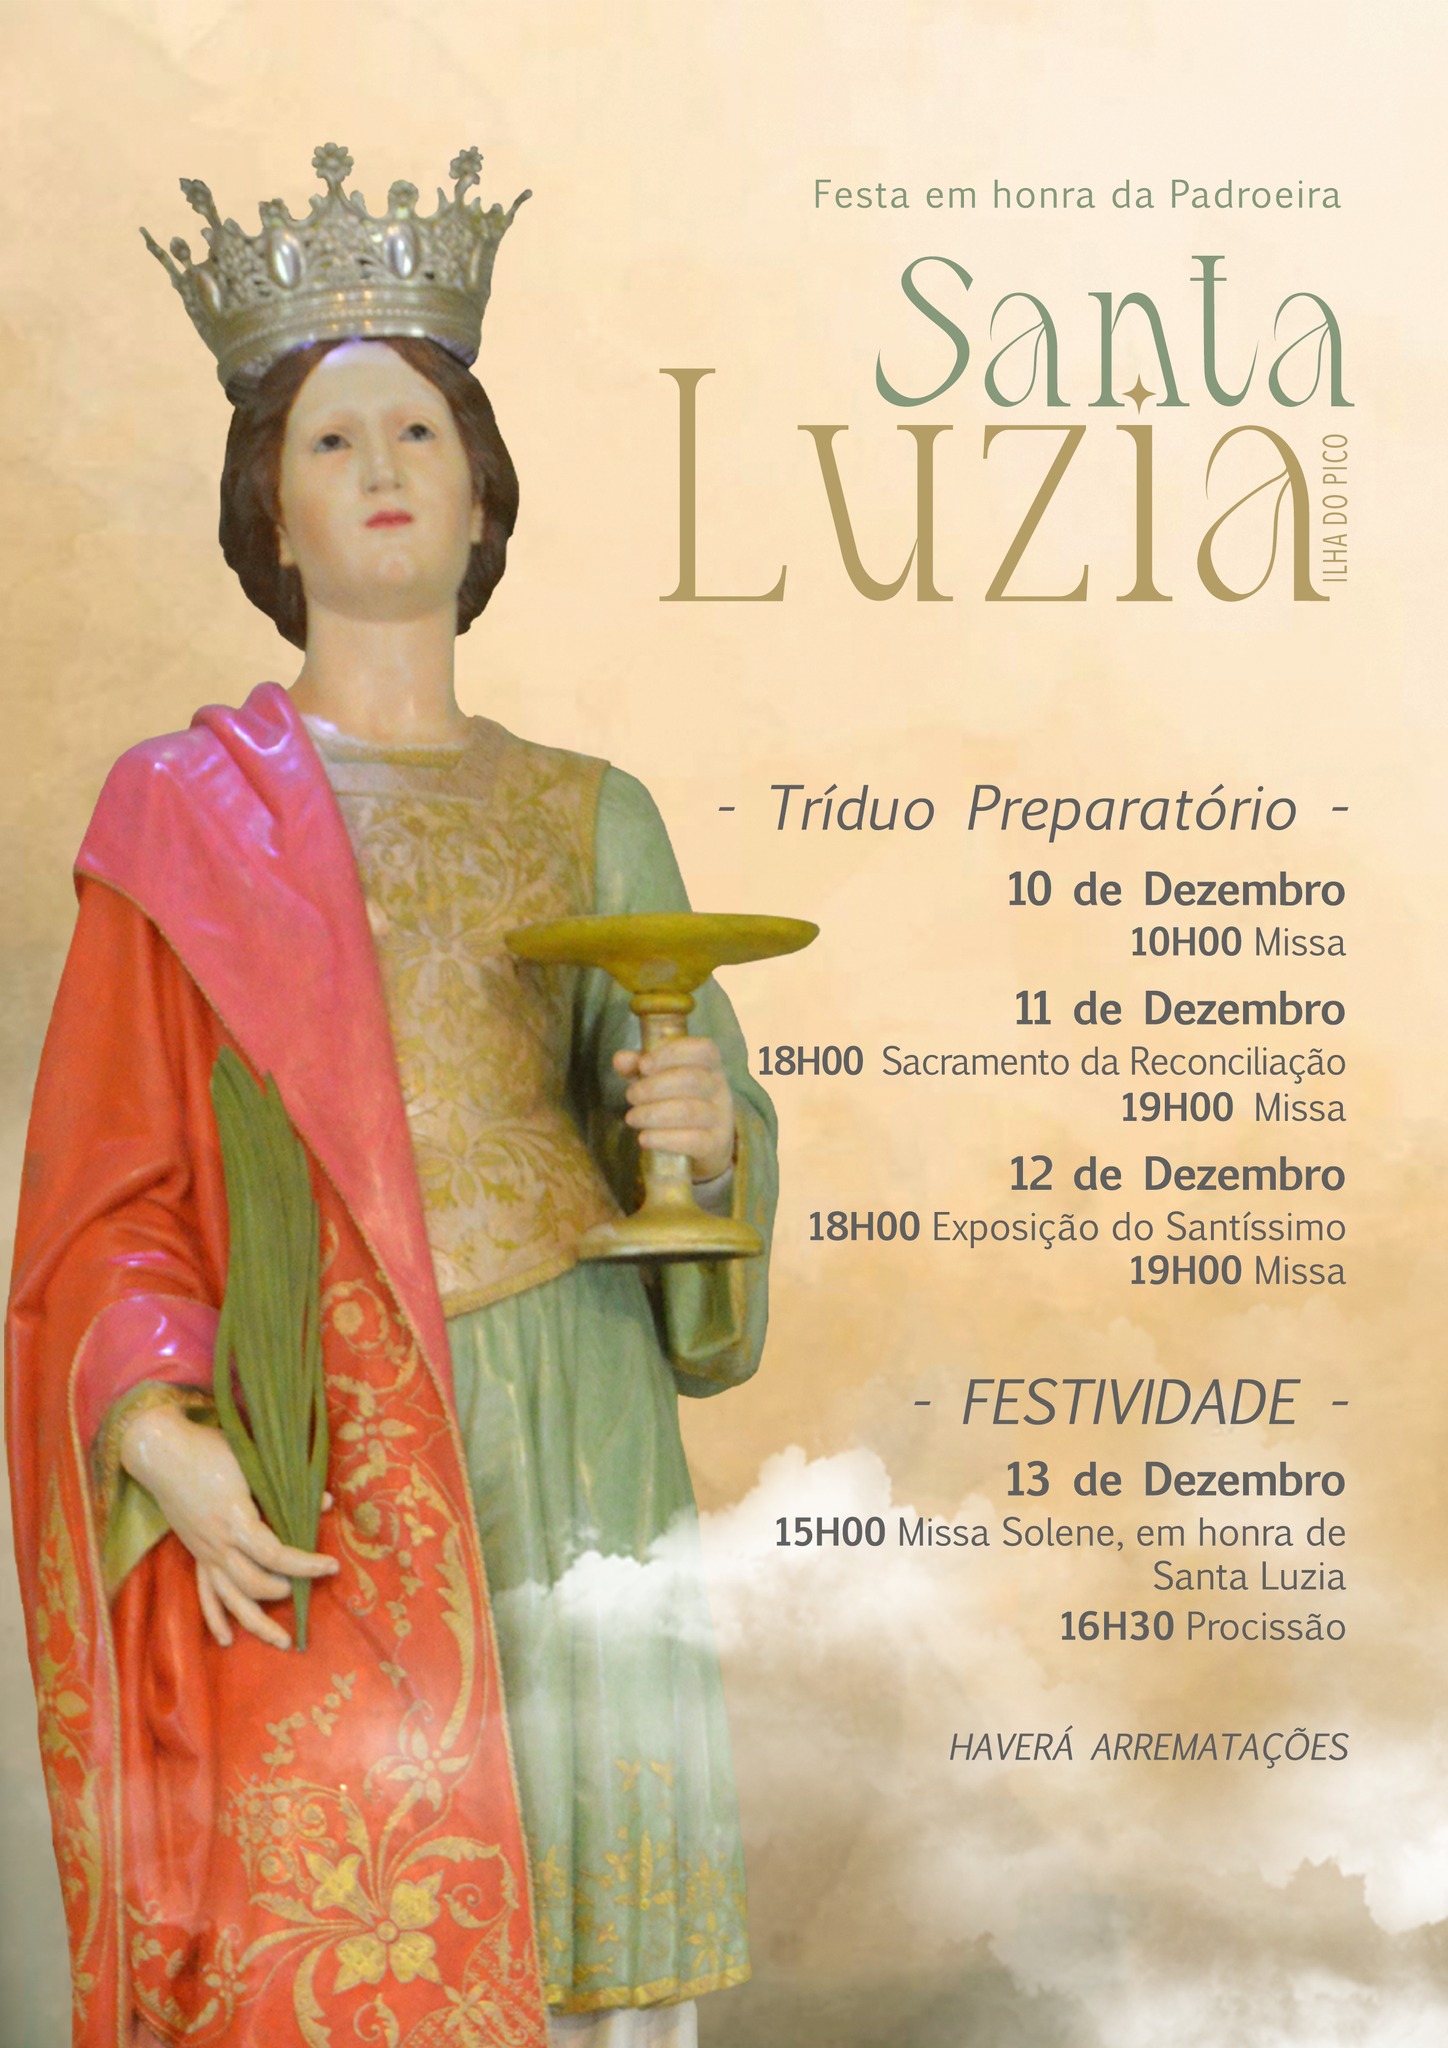 Festa em honra da Padroeira de Santa Luzia